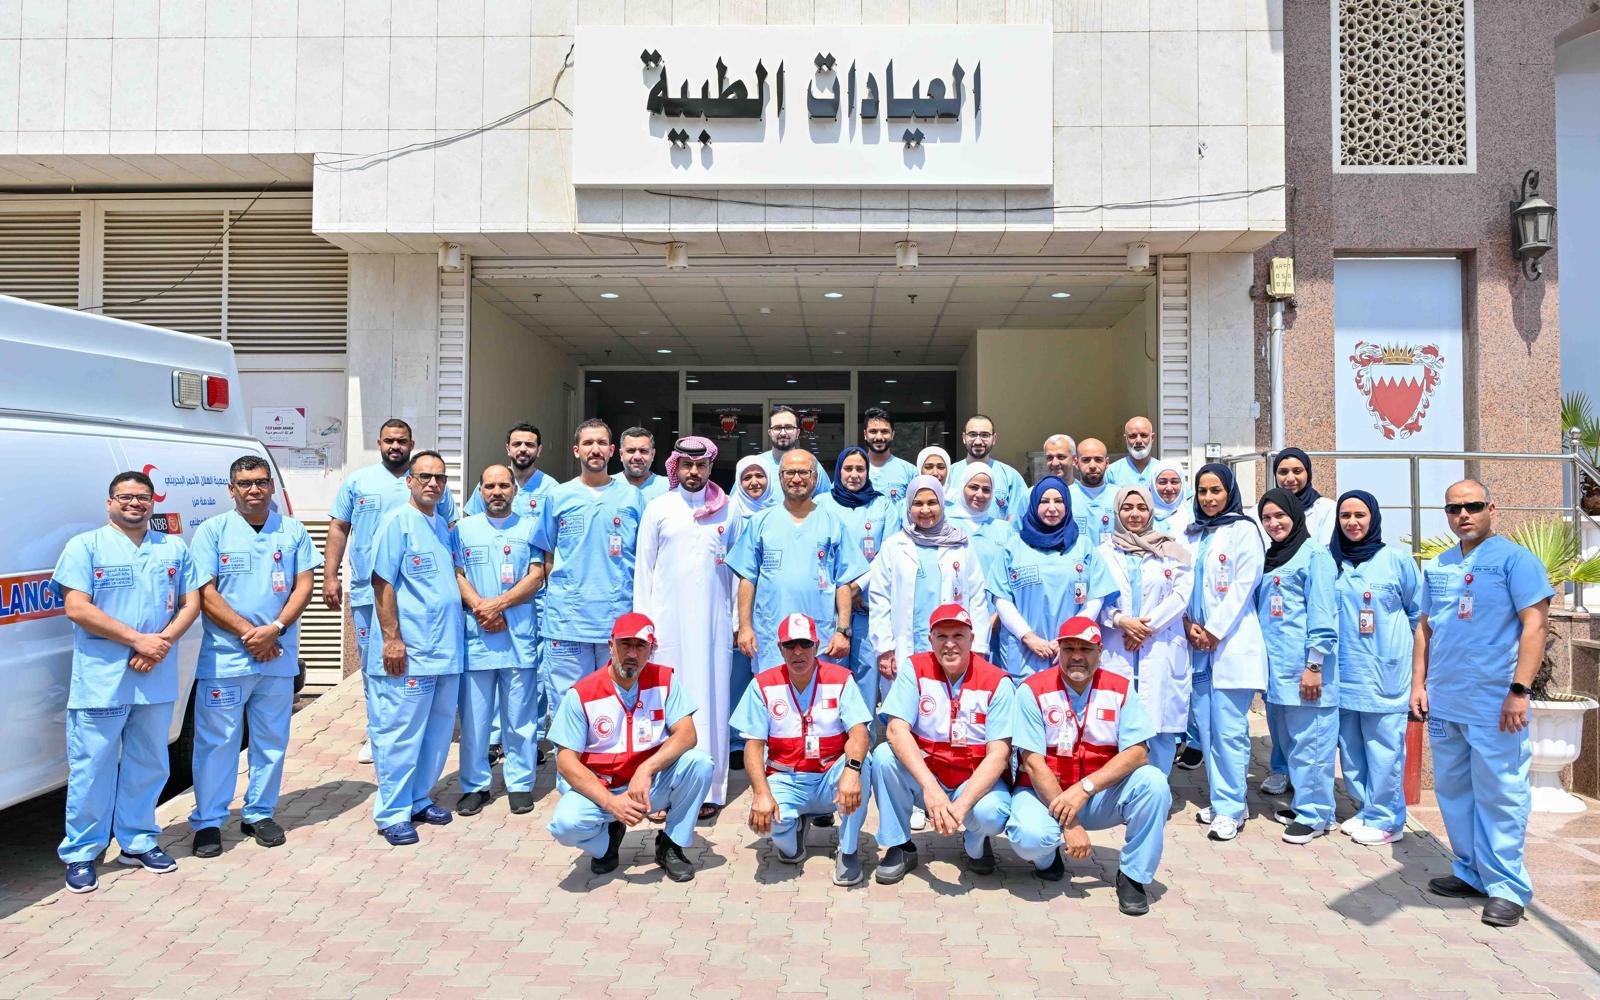 العيادة الطبية لبعثة مملكة البحرين للحج تفتح أبوابها استعداداً لاستقبال حجاج البحرين بمكة المكرمة